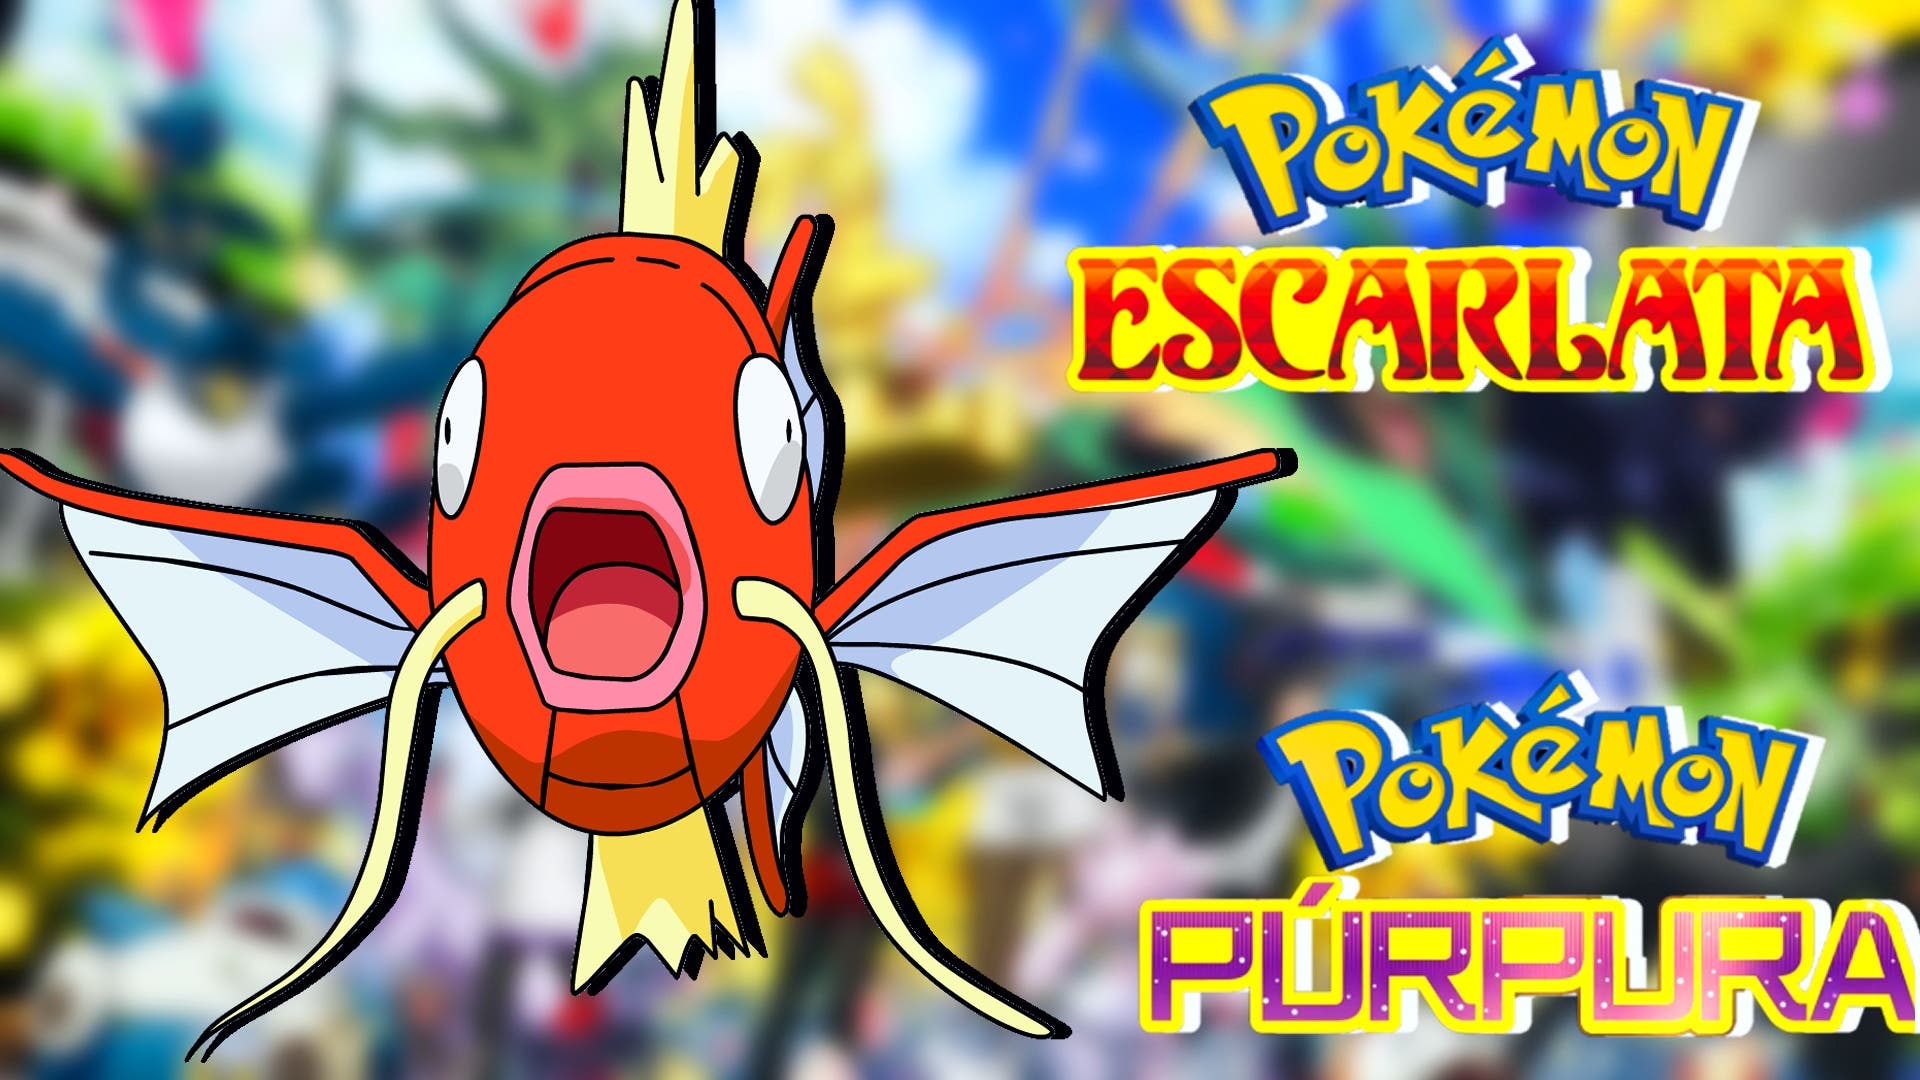 Pokémon Escarlata y Púrpura: Han usado a un Magikarp para vencer al Decidueye de Hisui en Teraincursiones de 7 estrellas